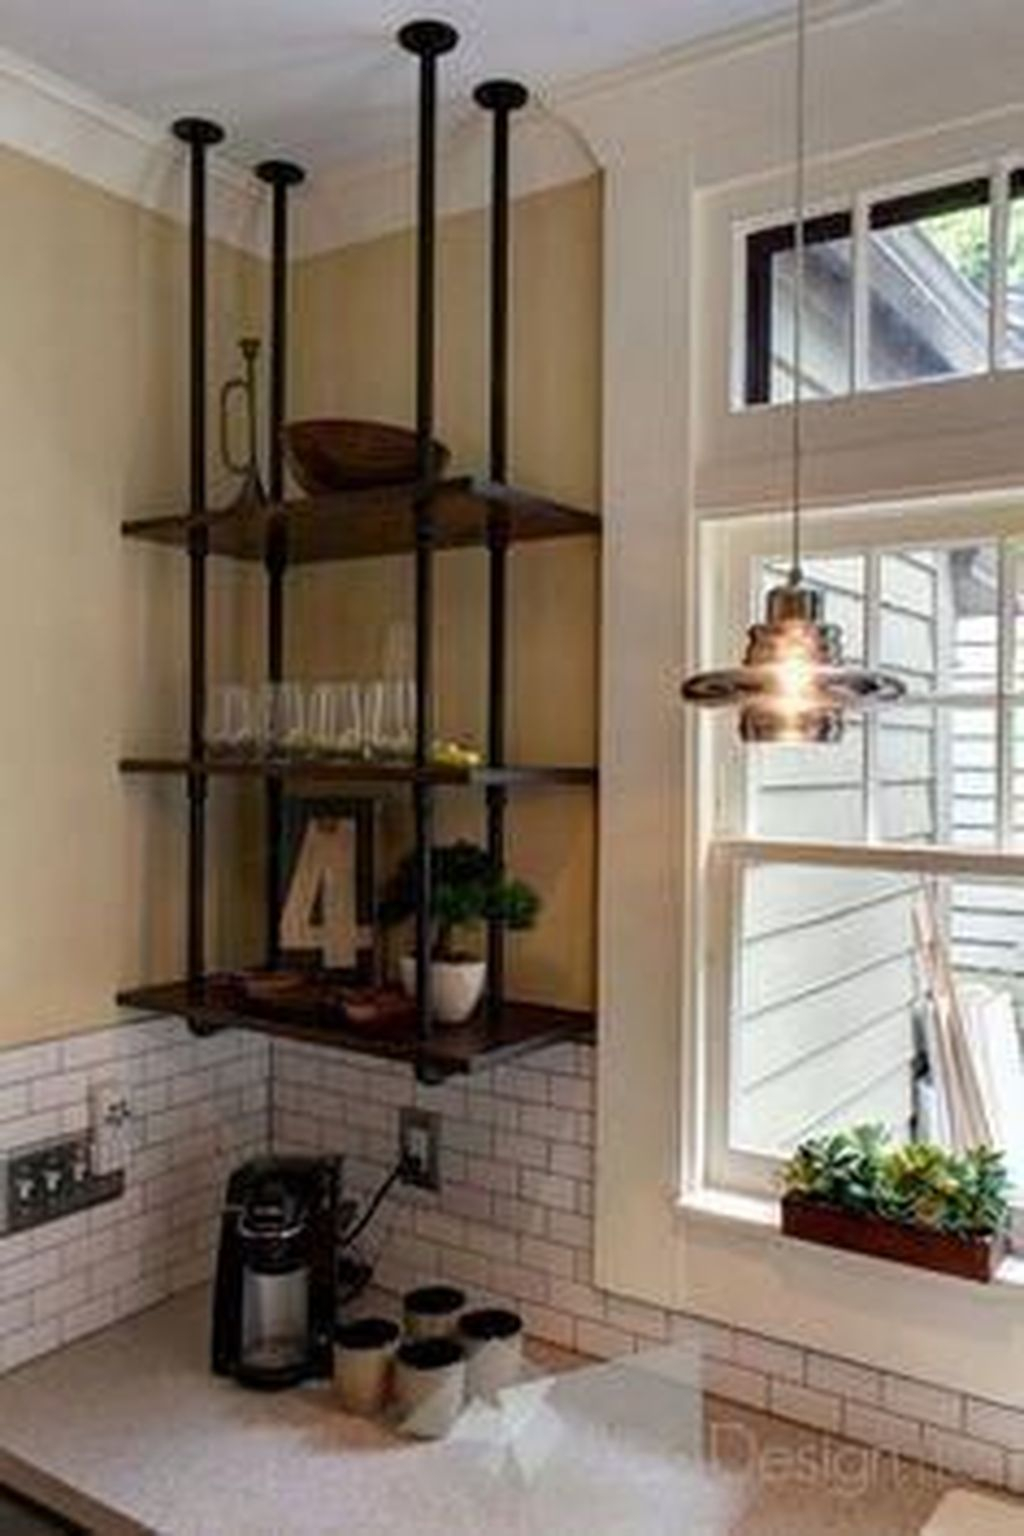 Wonderful Industrial Kitchen Shelf Design Ideas To Organize Your Kitchen20